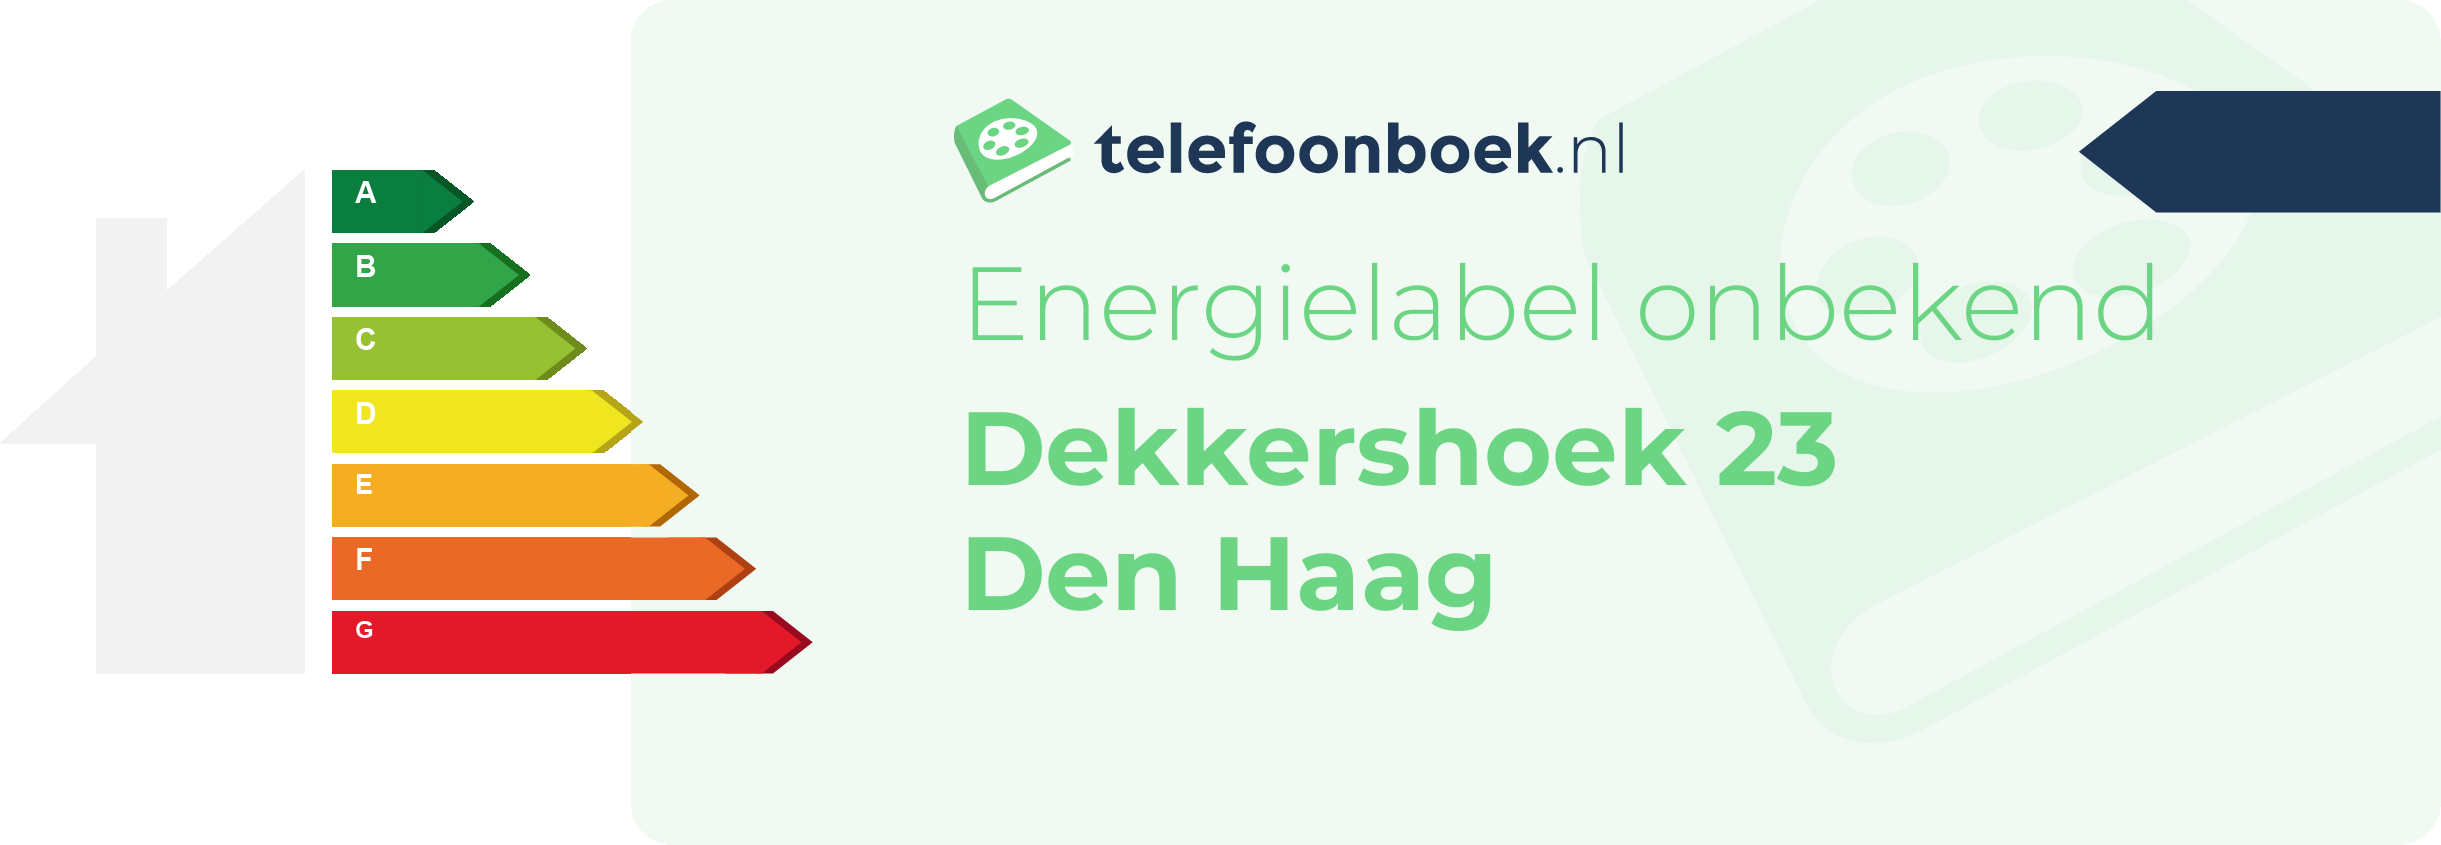 Energielabel Dekkershoek 23 Den Haag